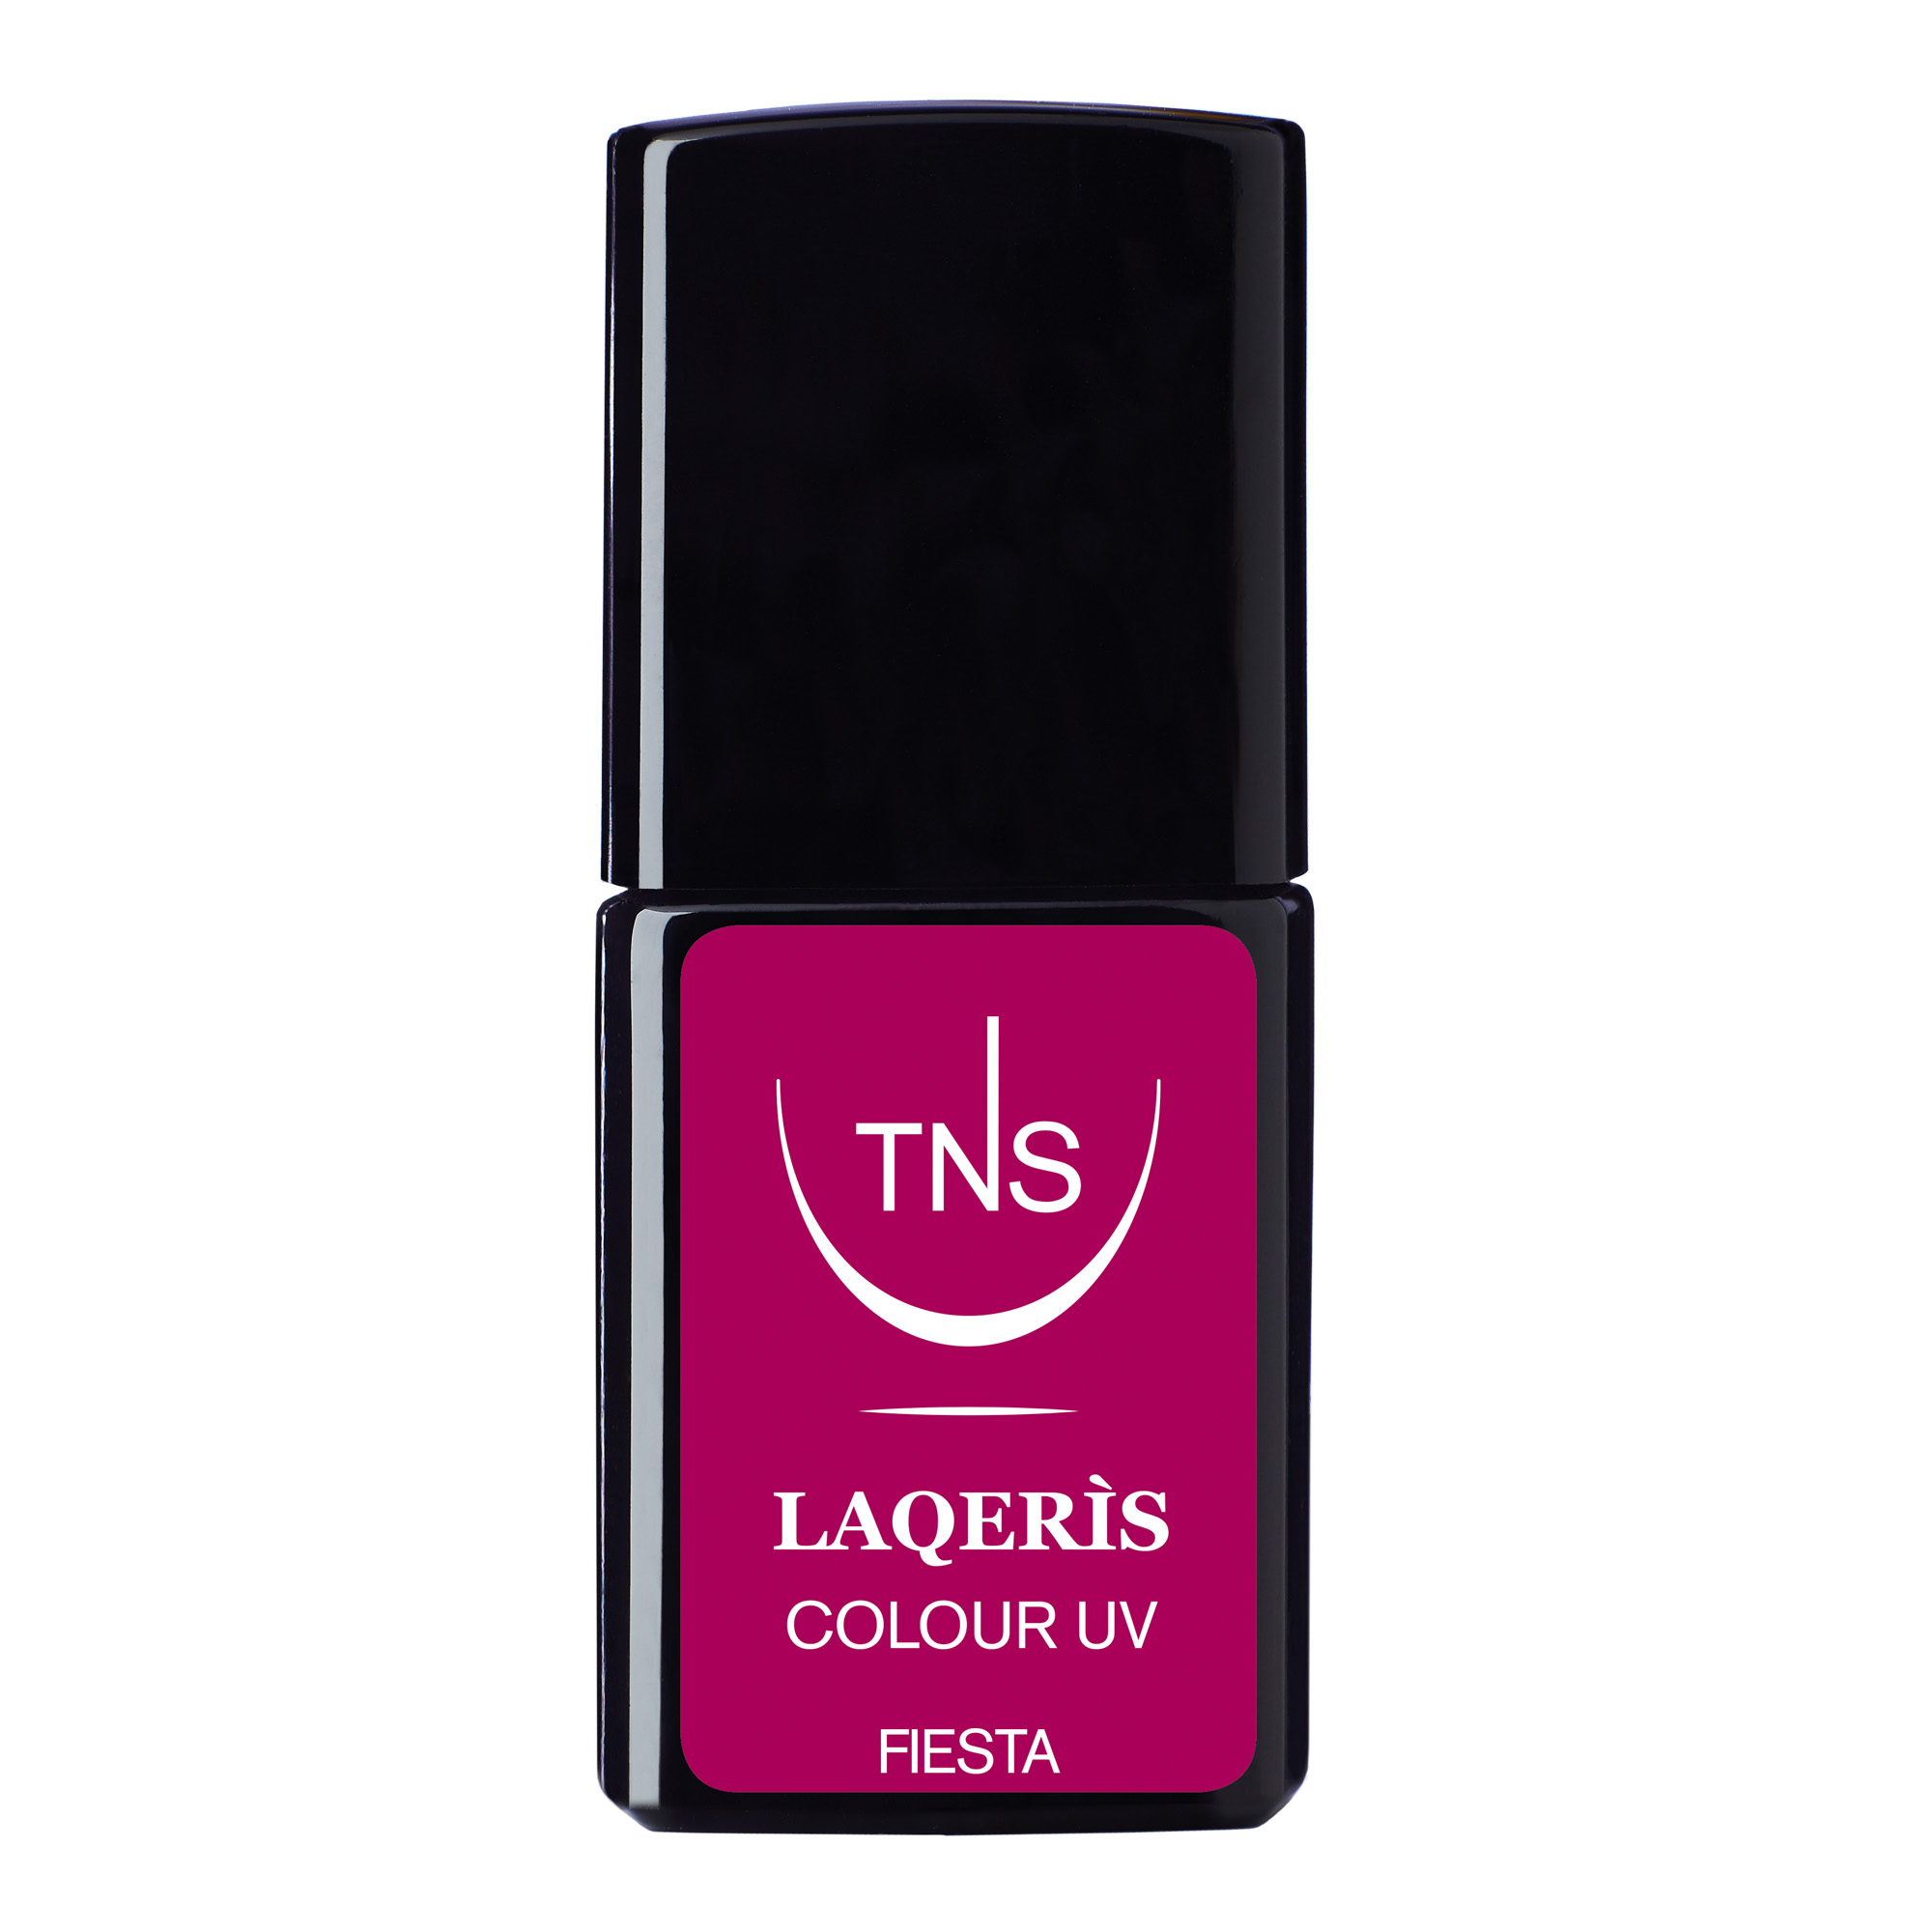 Semi-permanent nail polish fuchsia pink Fiesta 10 ml Laqerìs TNS